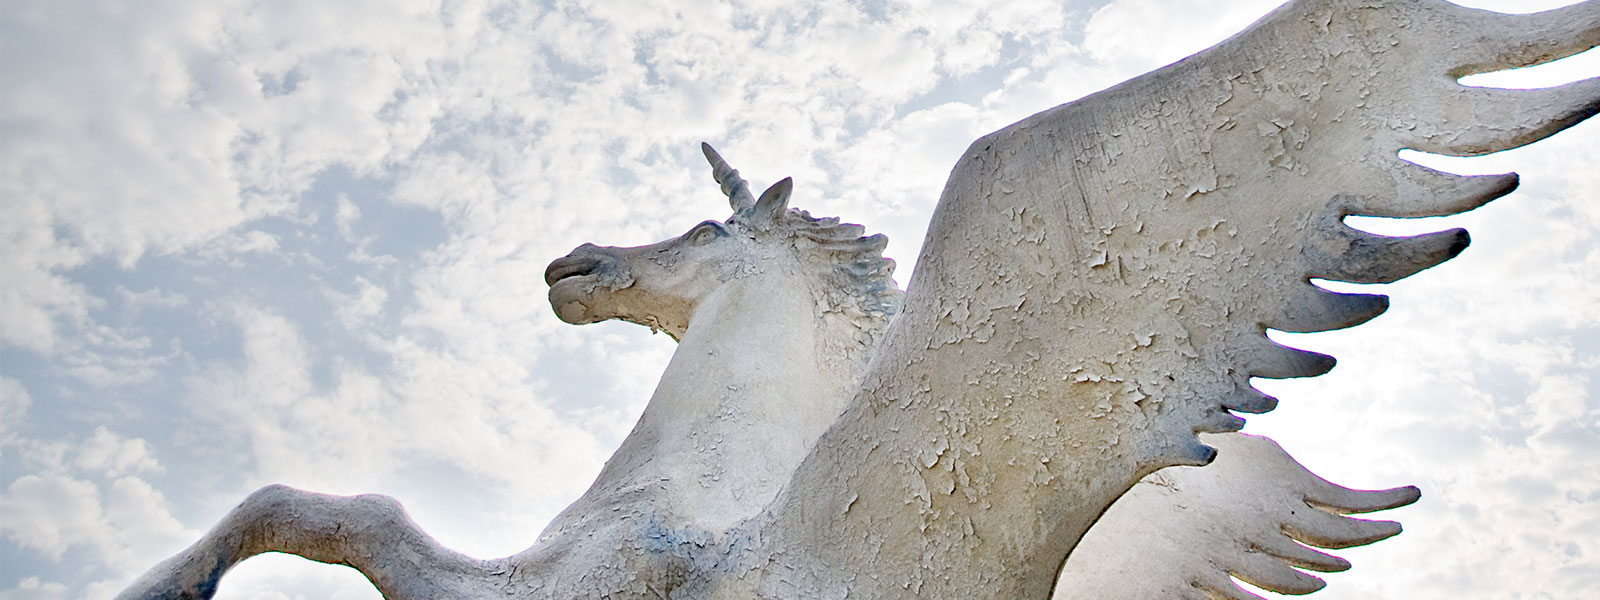 unicorn statue